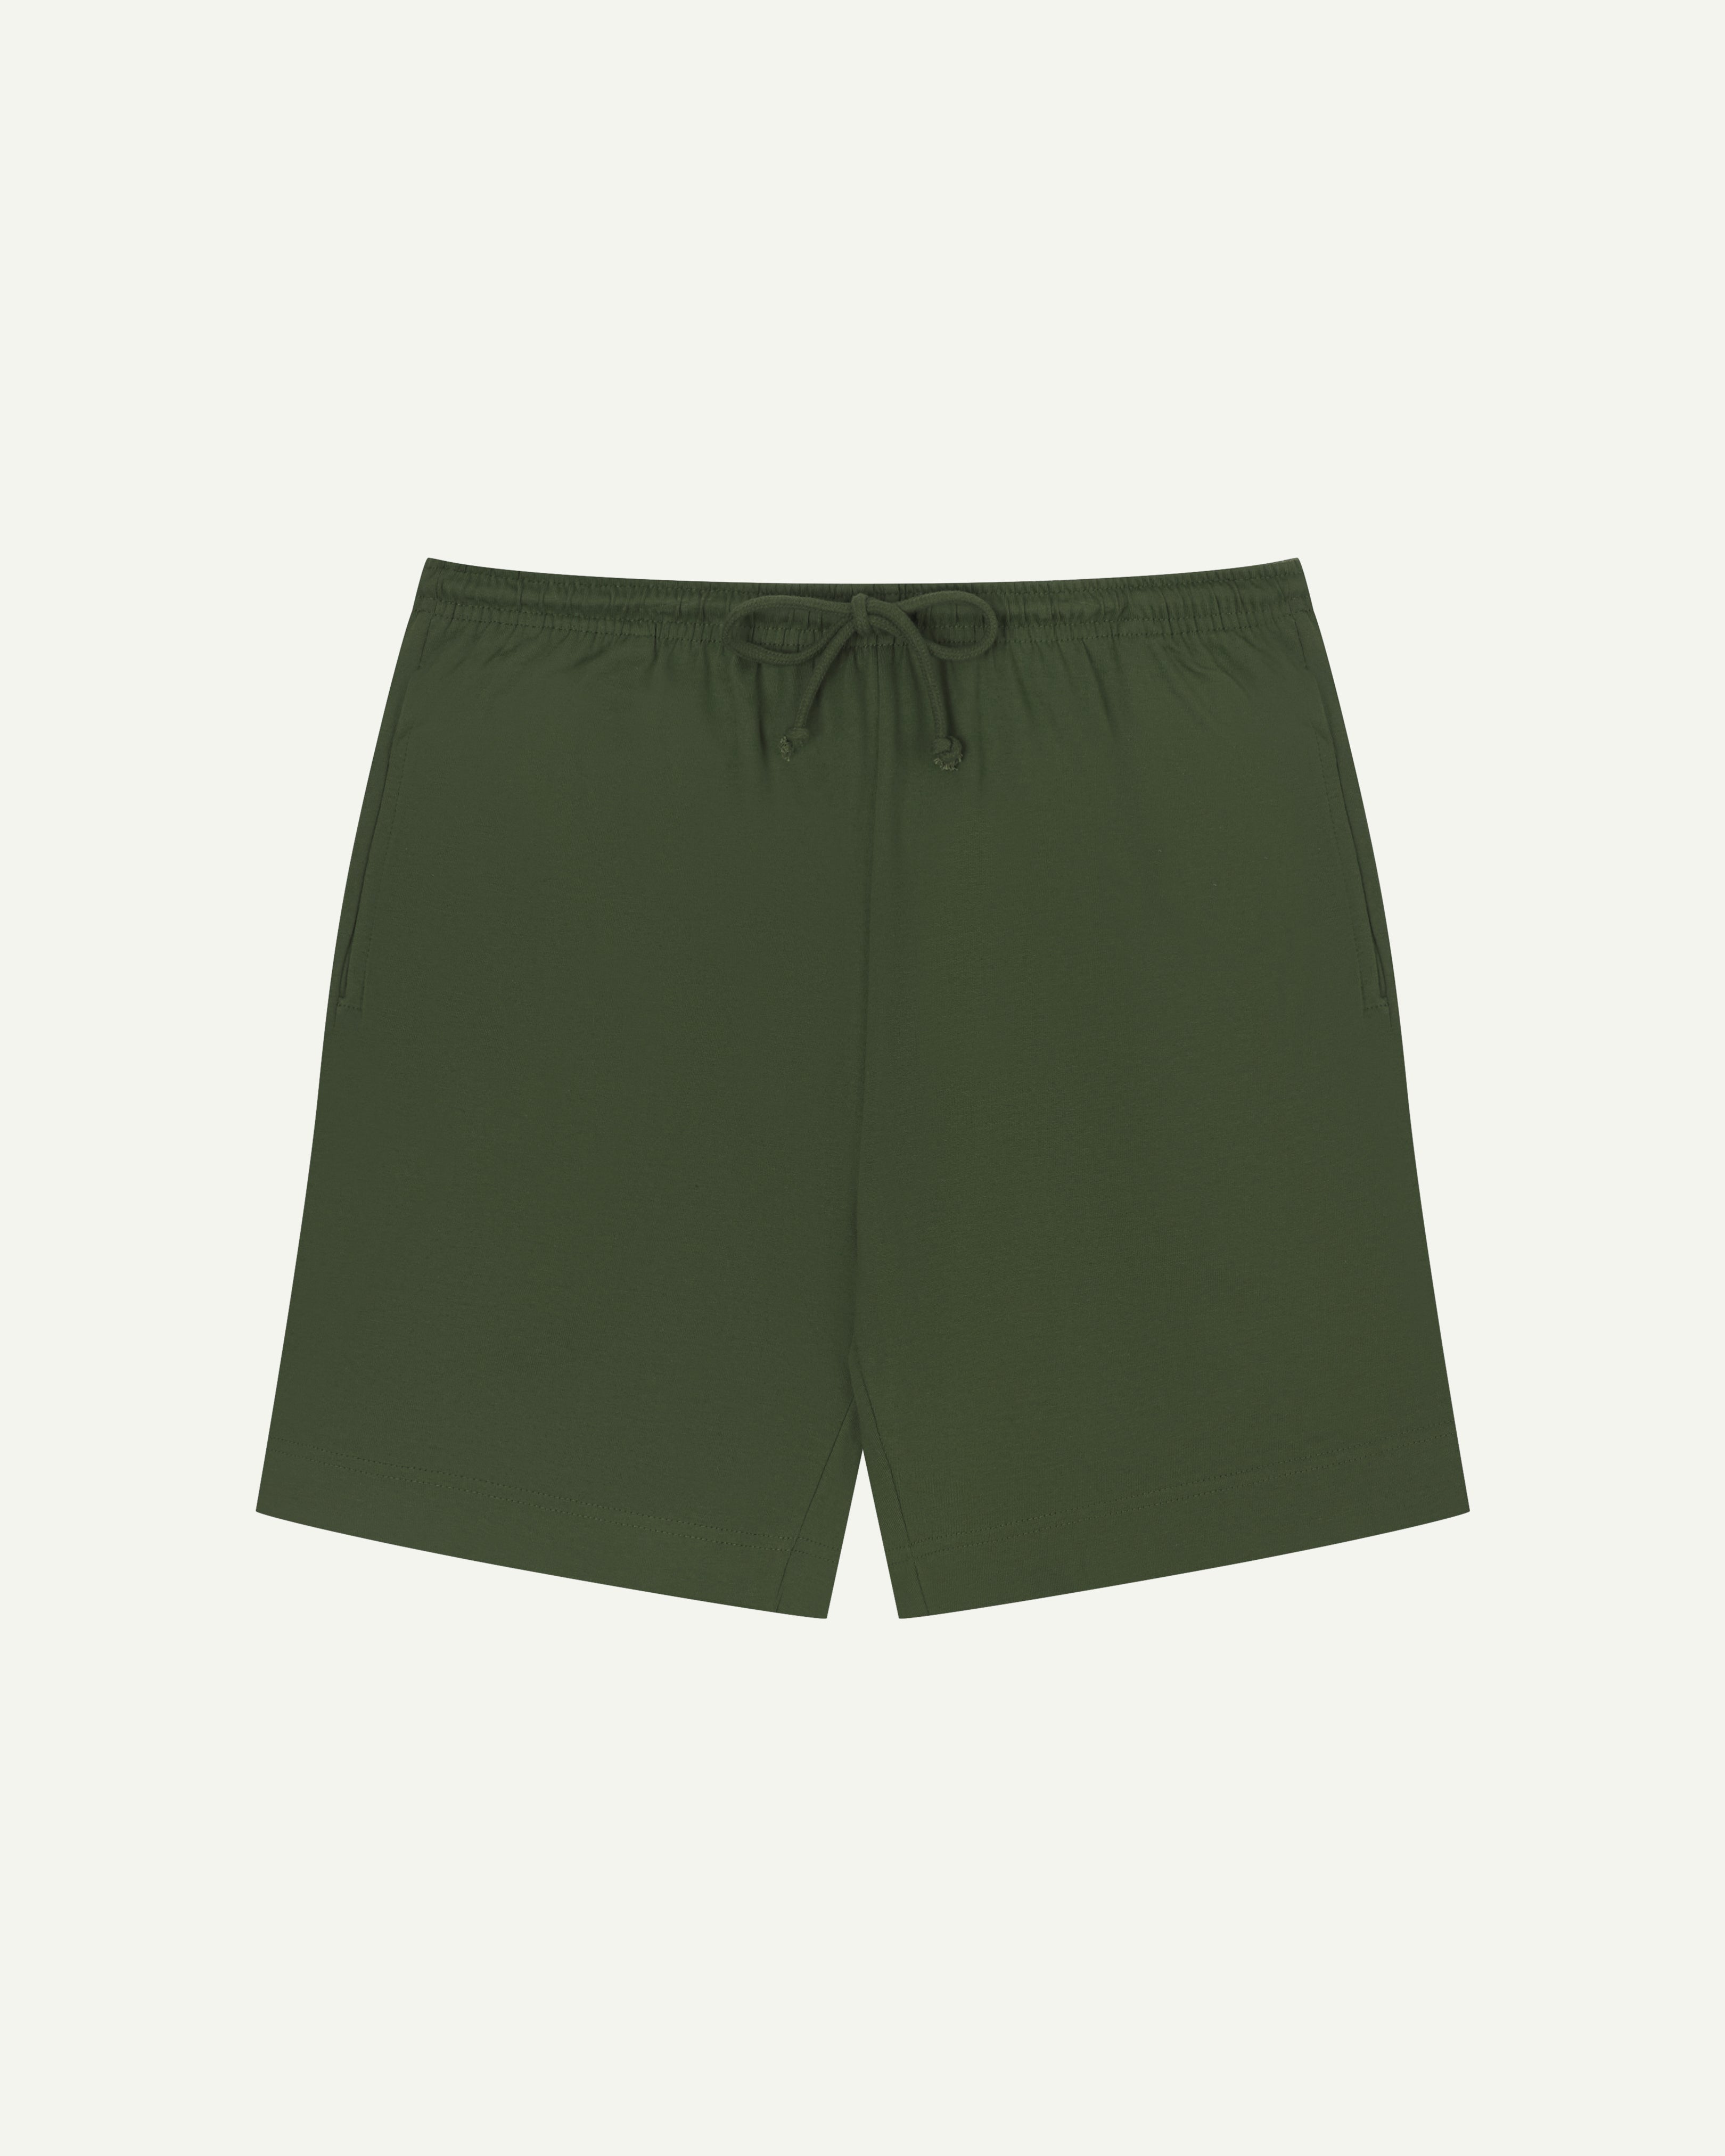 7007 Army Green Men's Drawstring Shorts